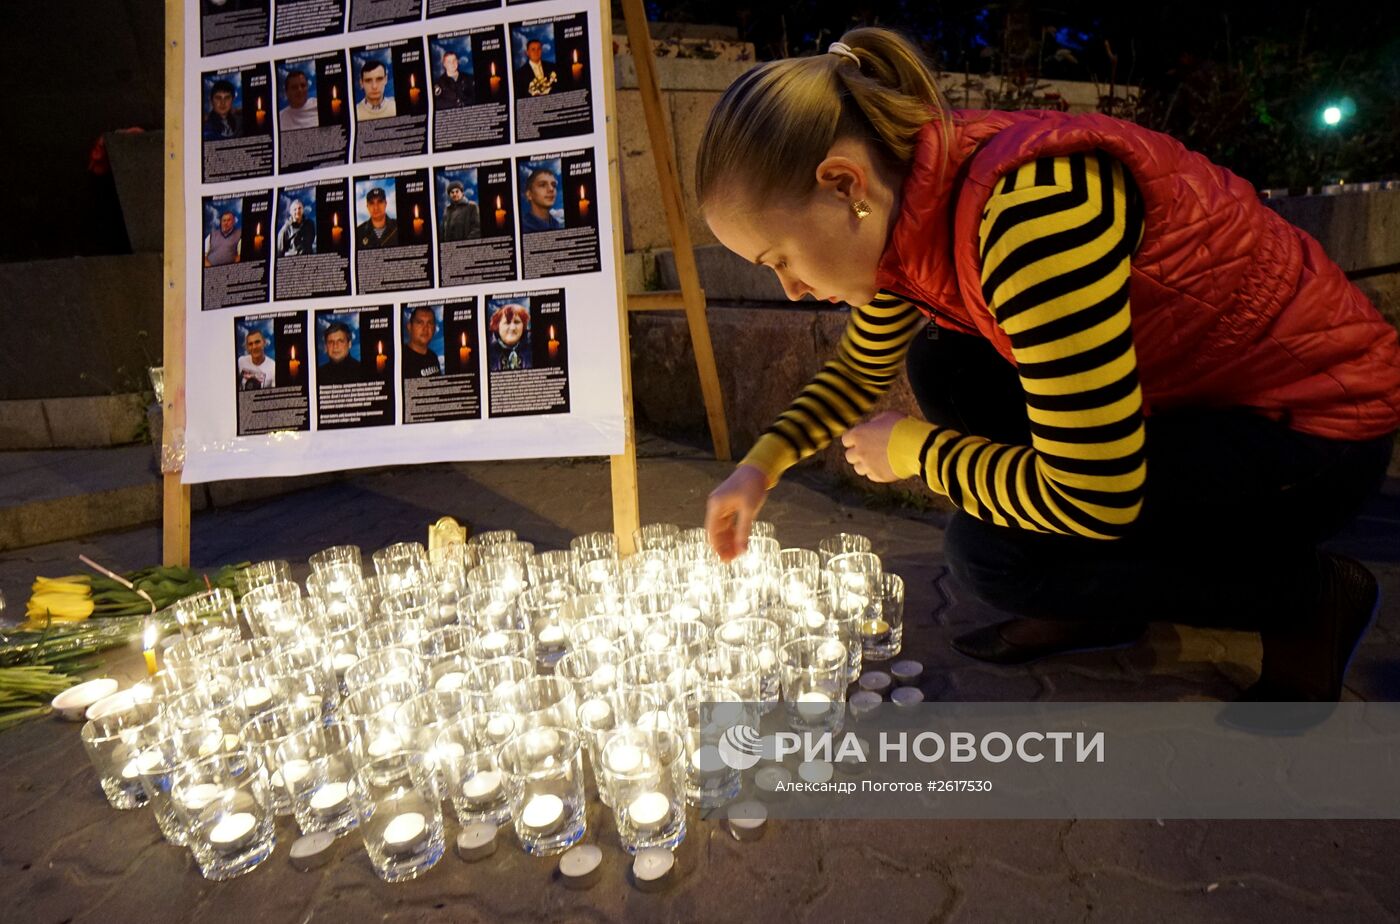 Акции памяти по погибшим в Одессе 2 мая 2014 года в регионах России